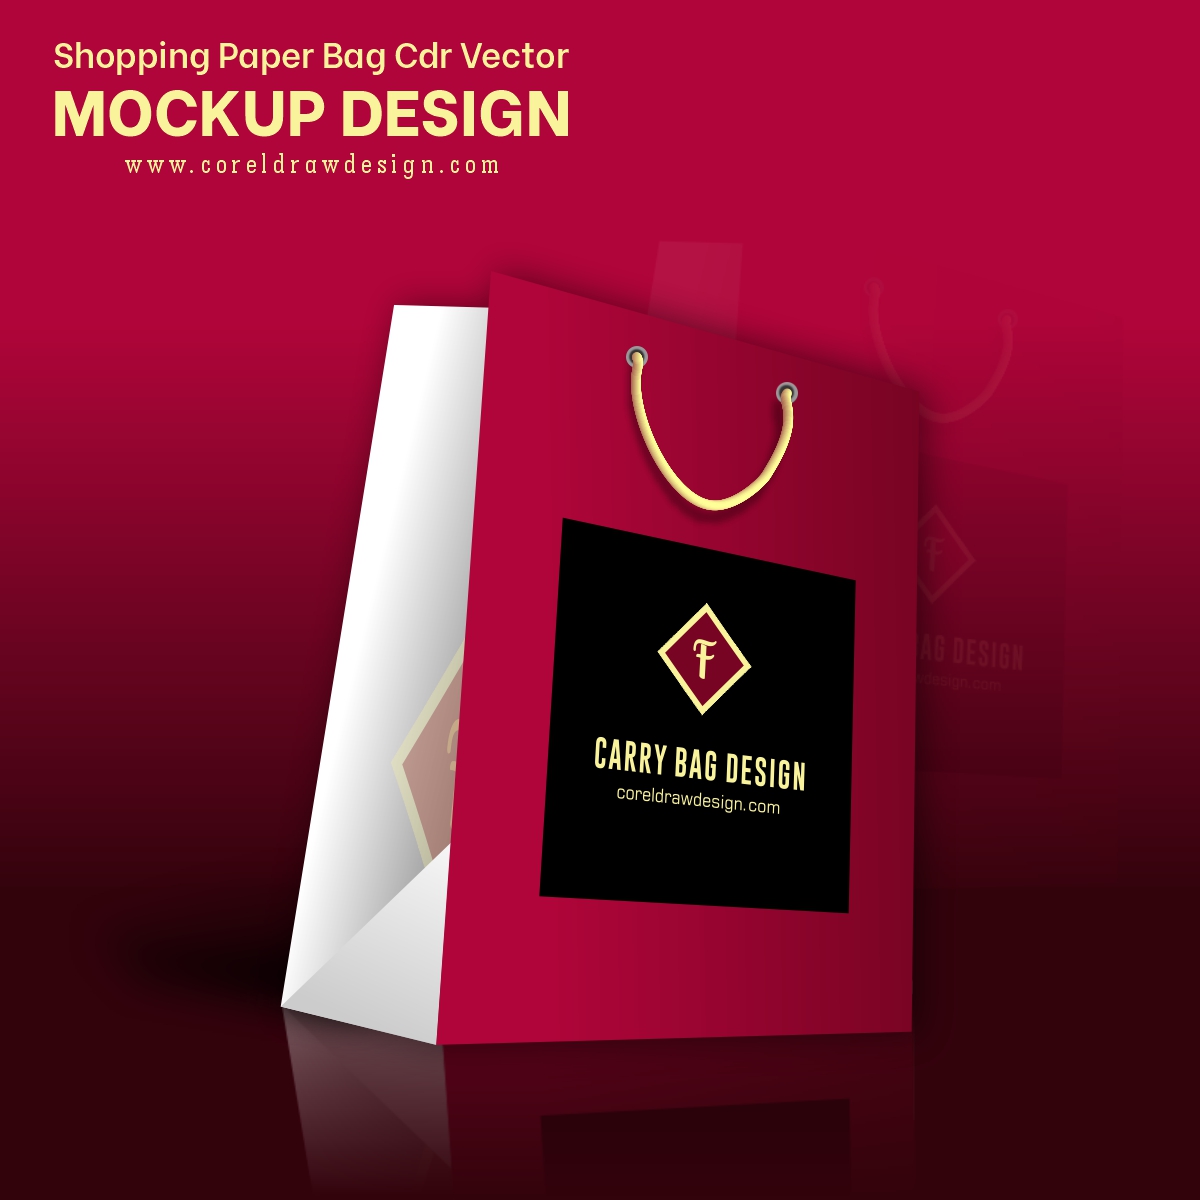 Shopping Paper Bag Cdr Vector Mockup Design